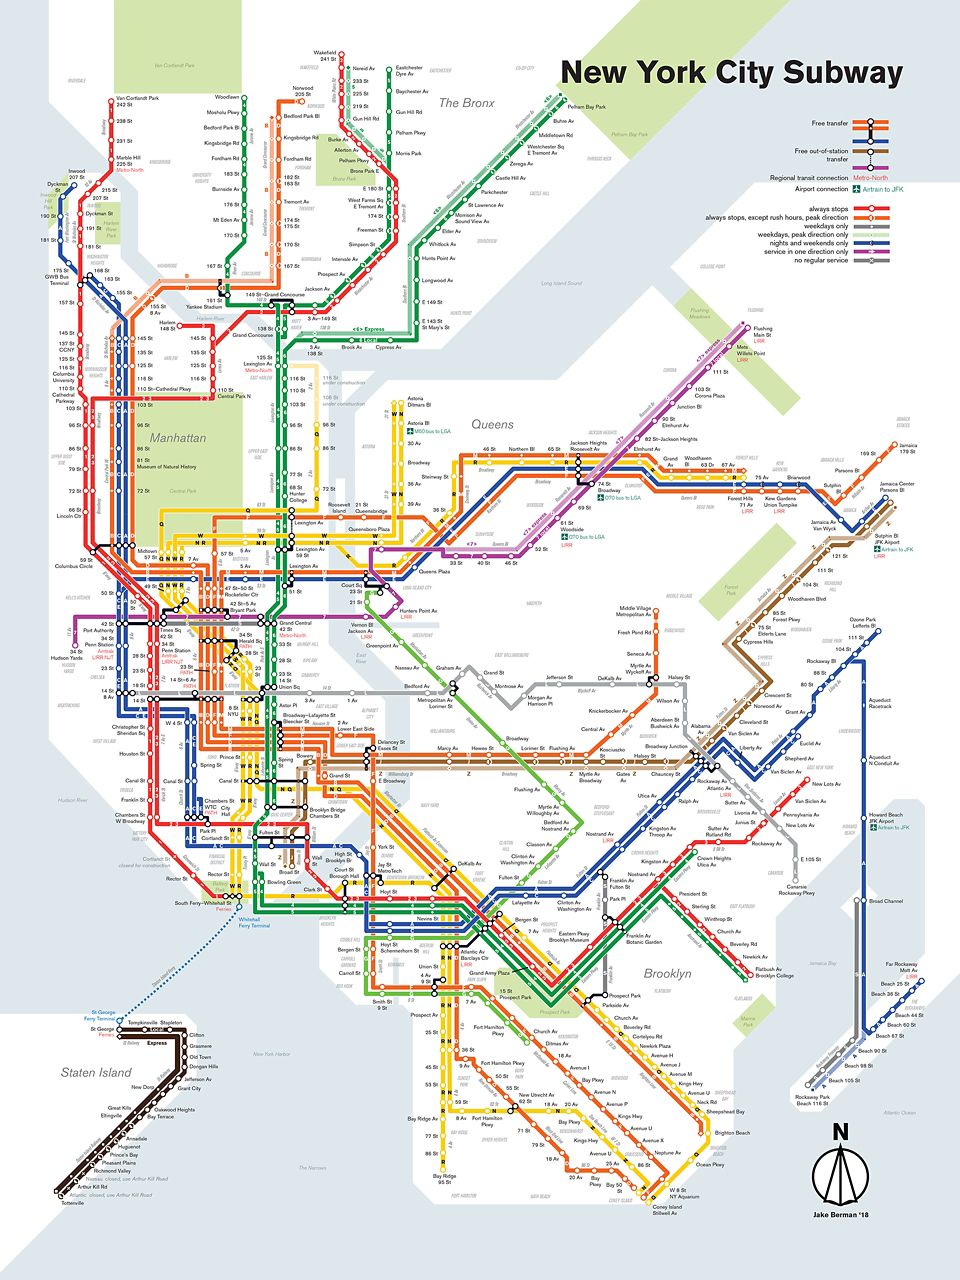 New York Subway Map New York City Subway Fantasy Map Revision